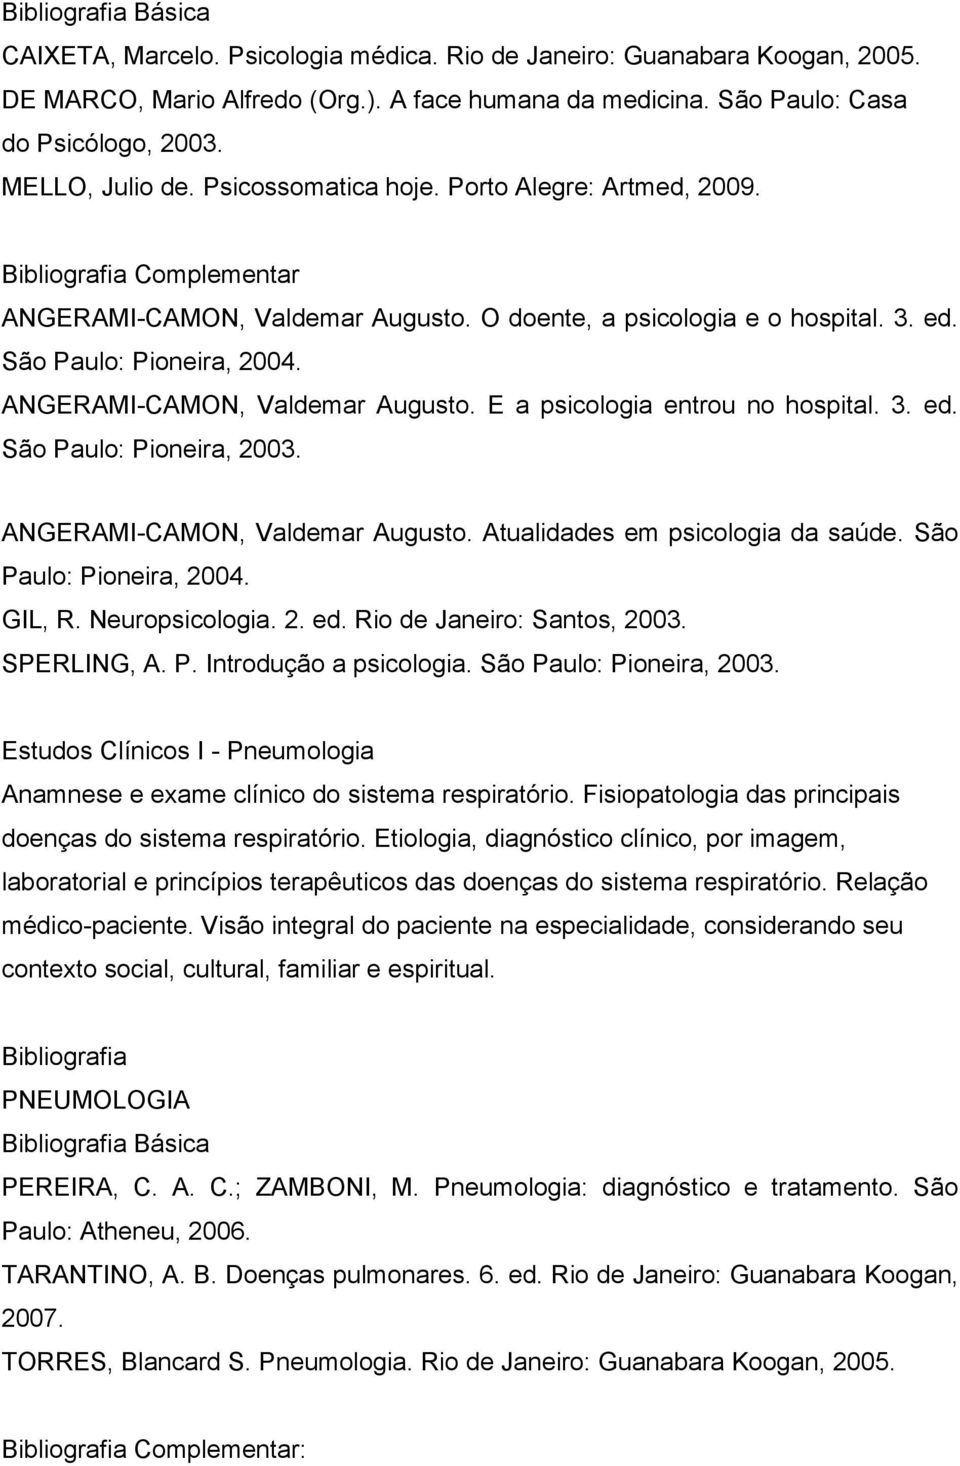 3. ed. São Paulo: Pioneira, 2003. ANGERAMI-CAMON, Valdemar Augusto. Atualidades em psicologia da saúde. São Paulo: Pioneira, 2004. GIL, R. Neuropsicologia. 2. ed. Rio de Janeiro: Santos, 2003.